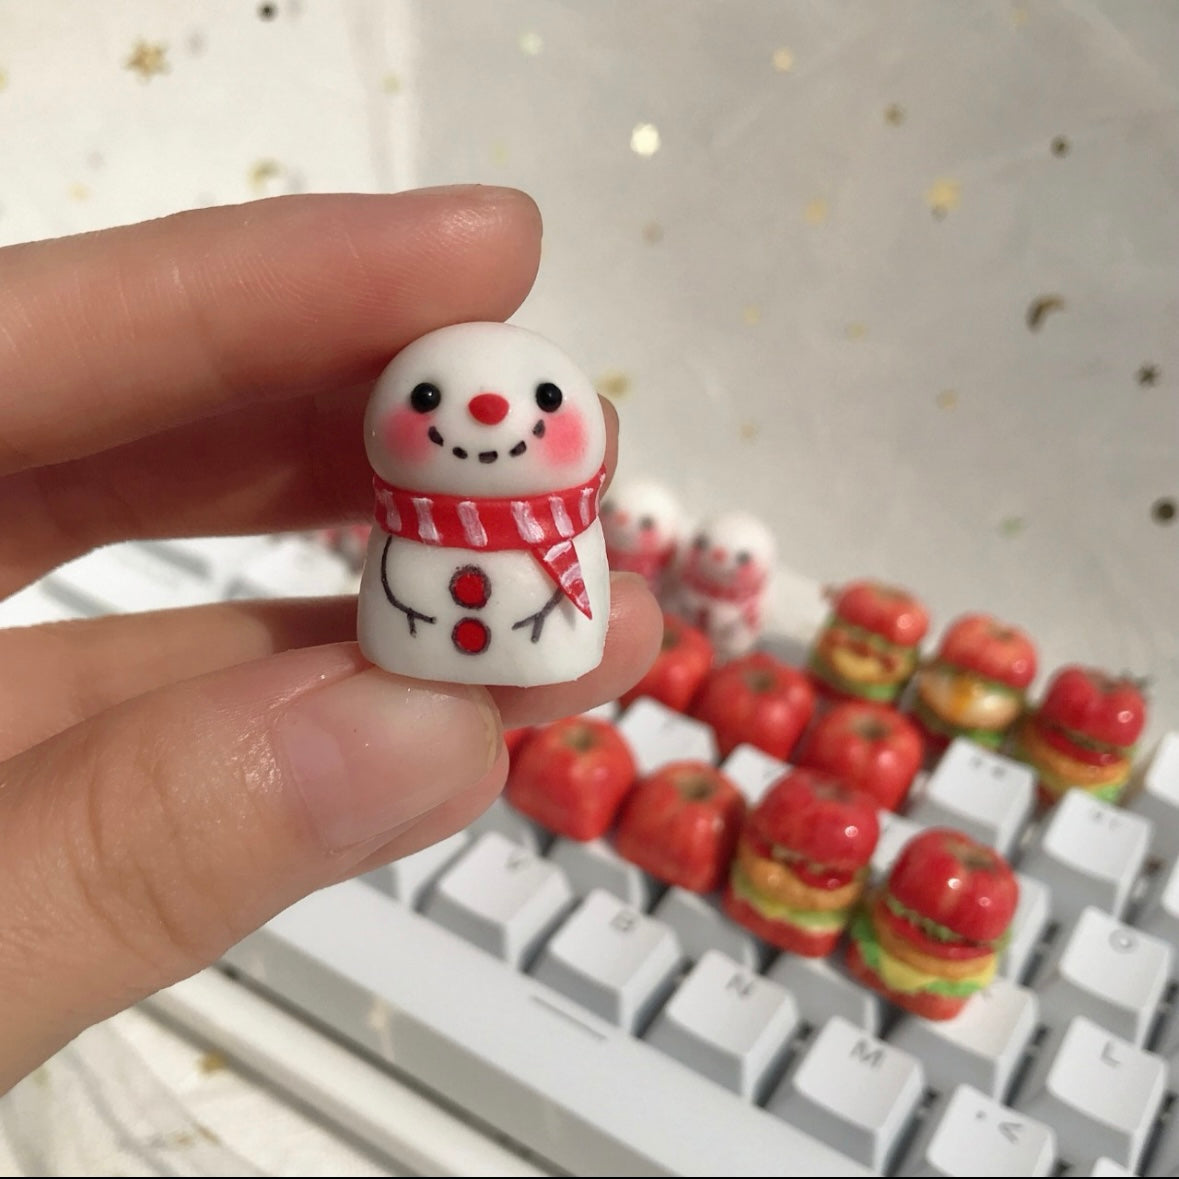 Christmas Custom Snowman Keycaps Frosty Friends Artisan Keycaps